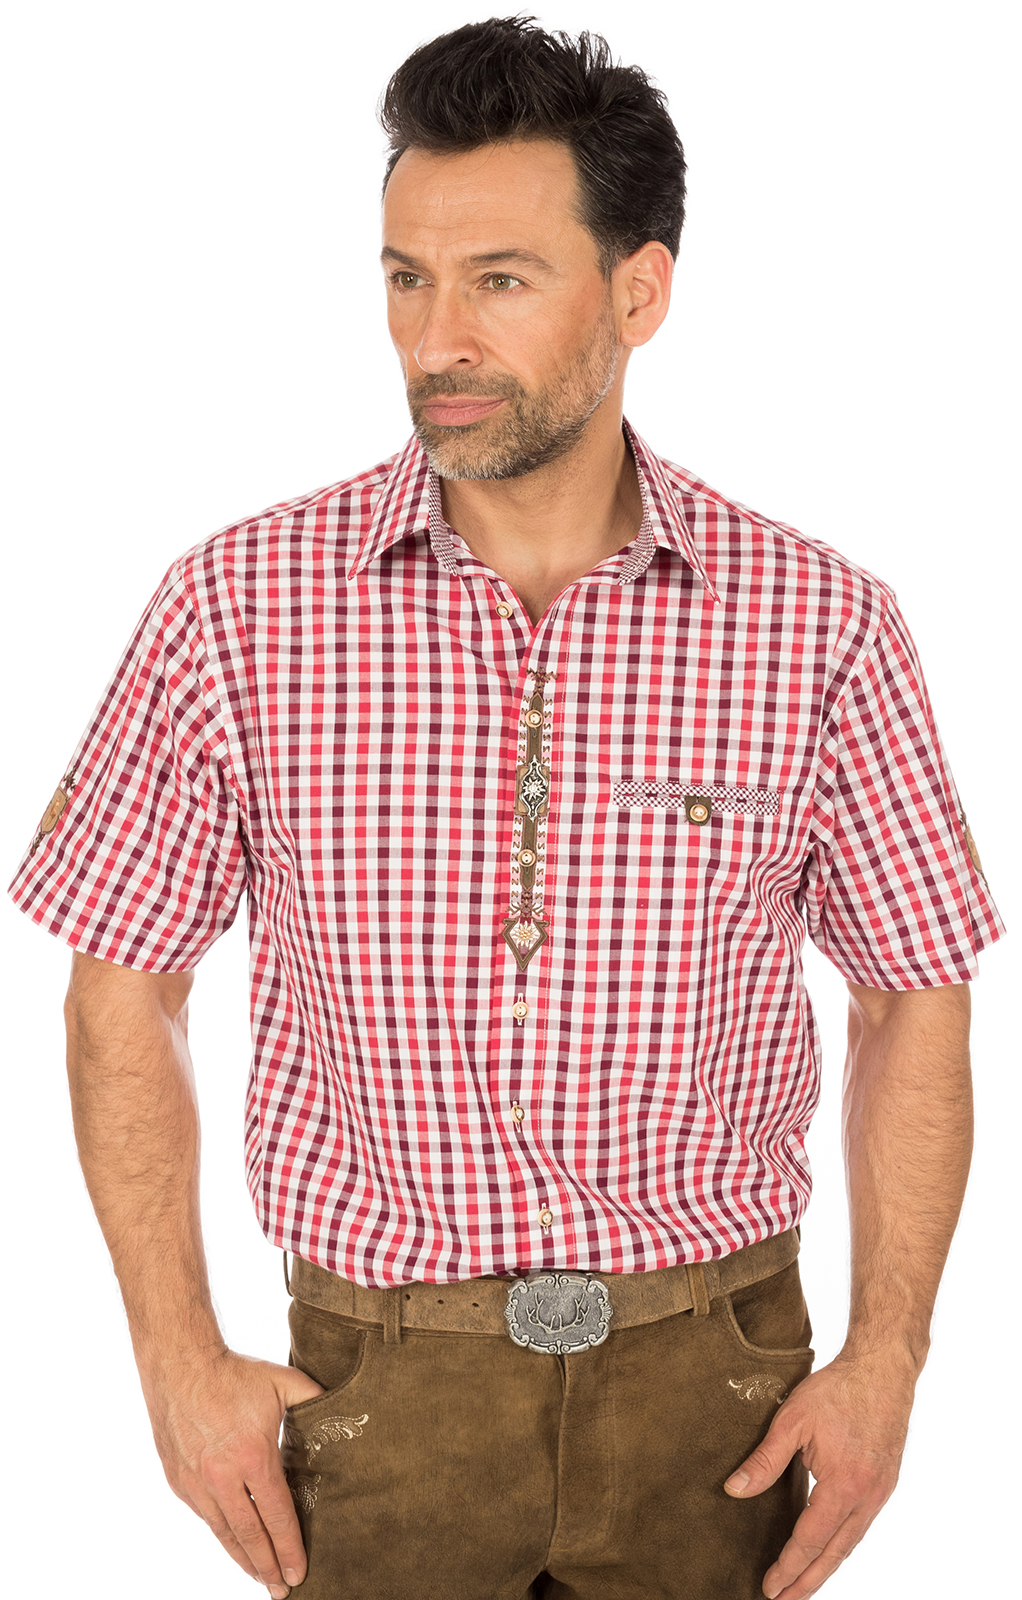 weitere Bilder von German traditional shirt short arms red